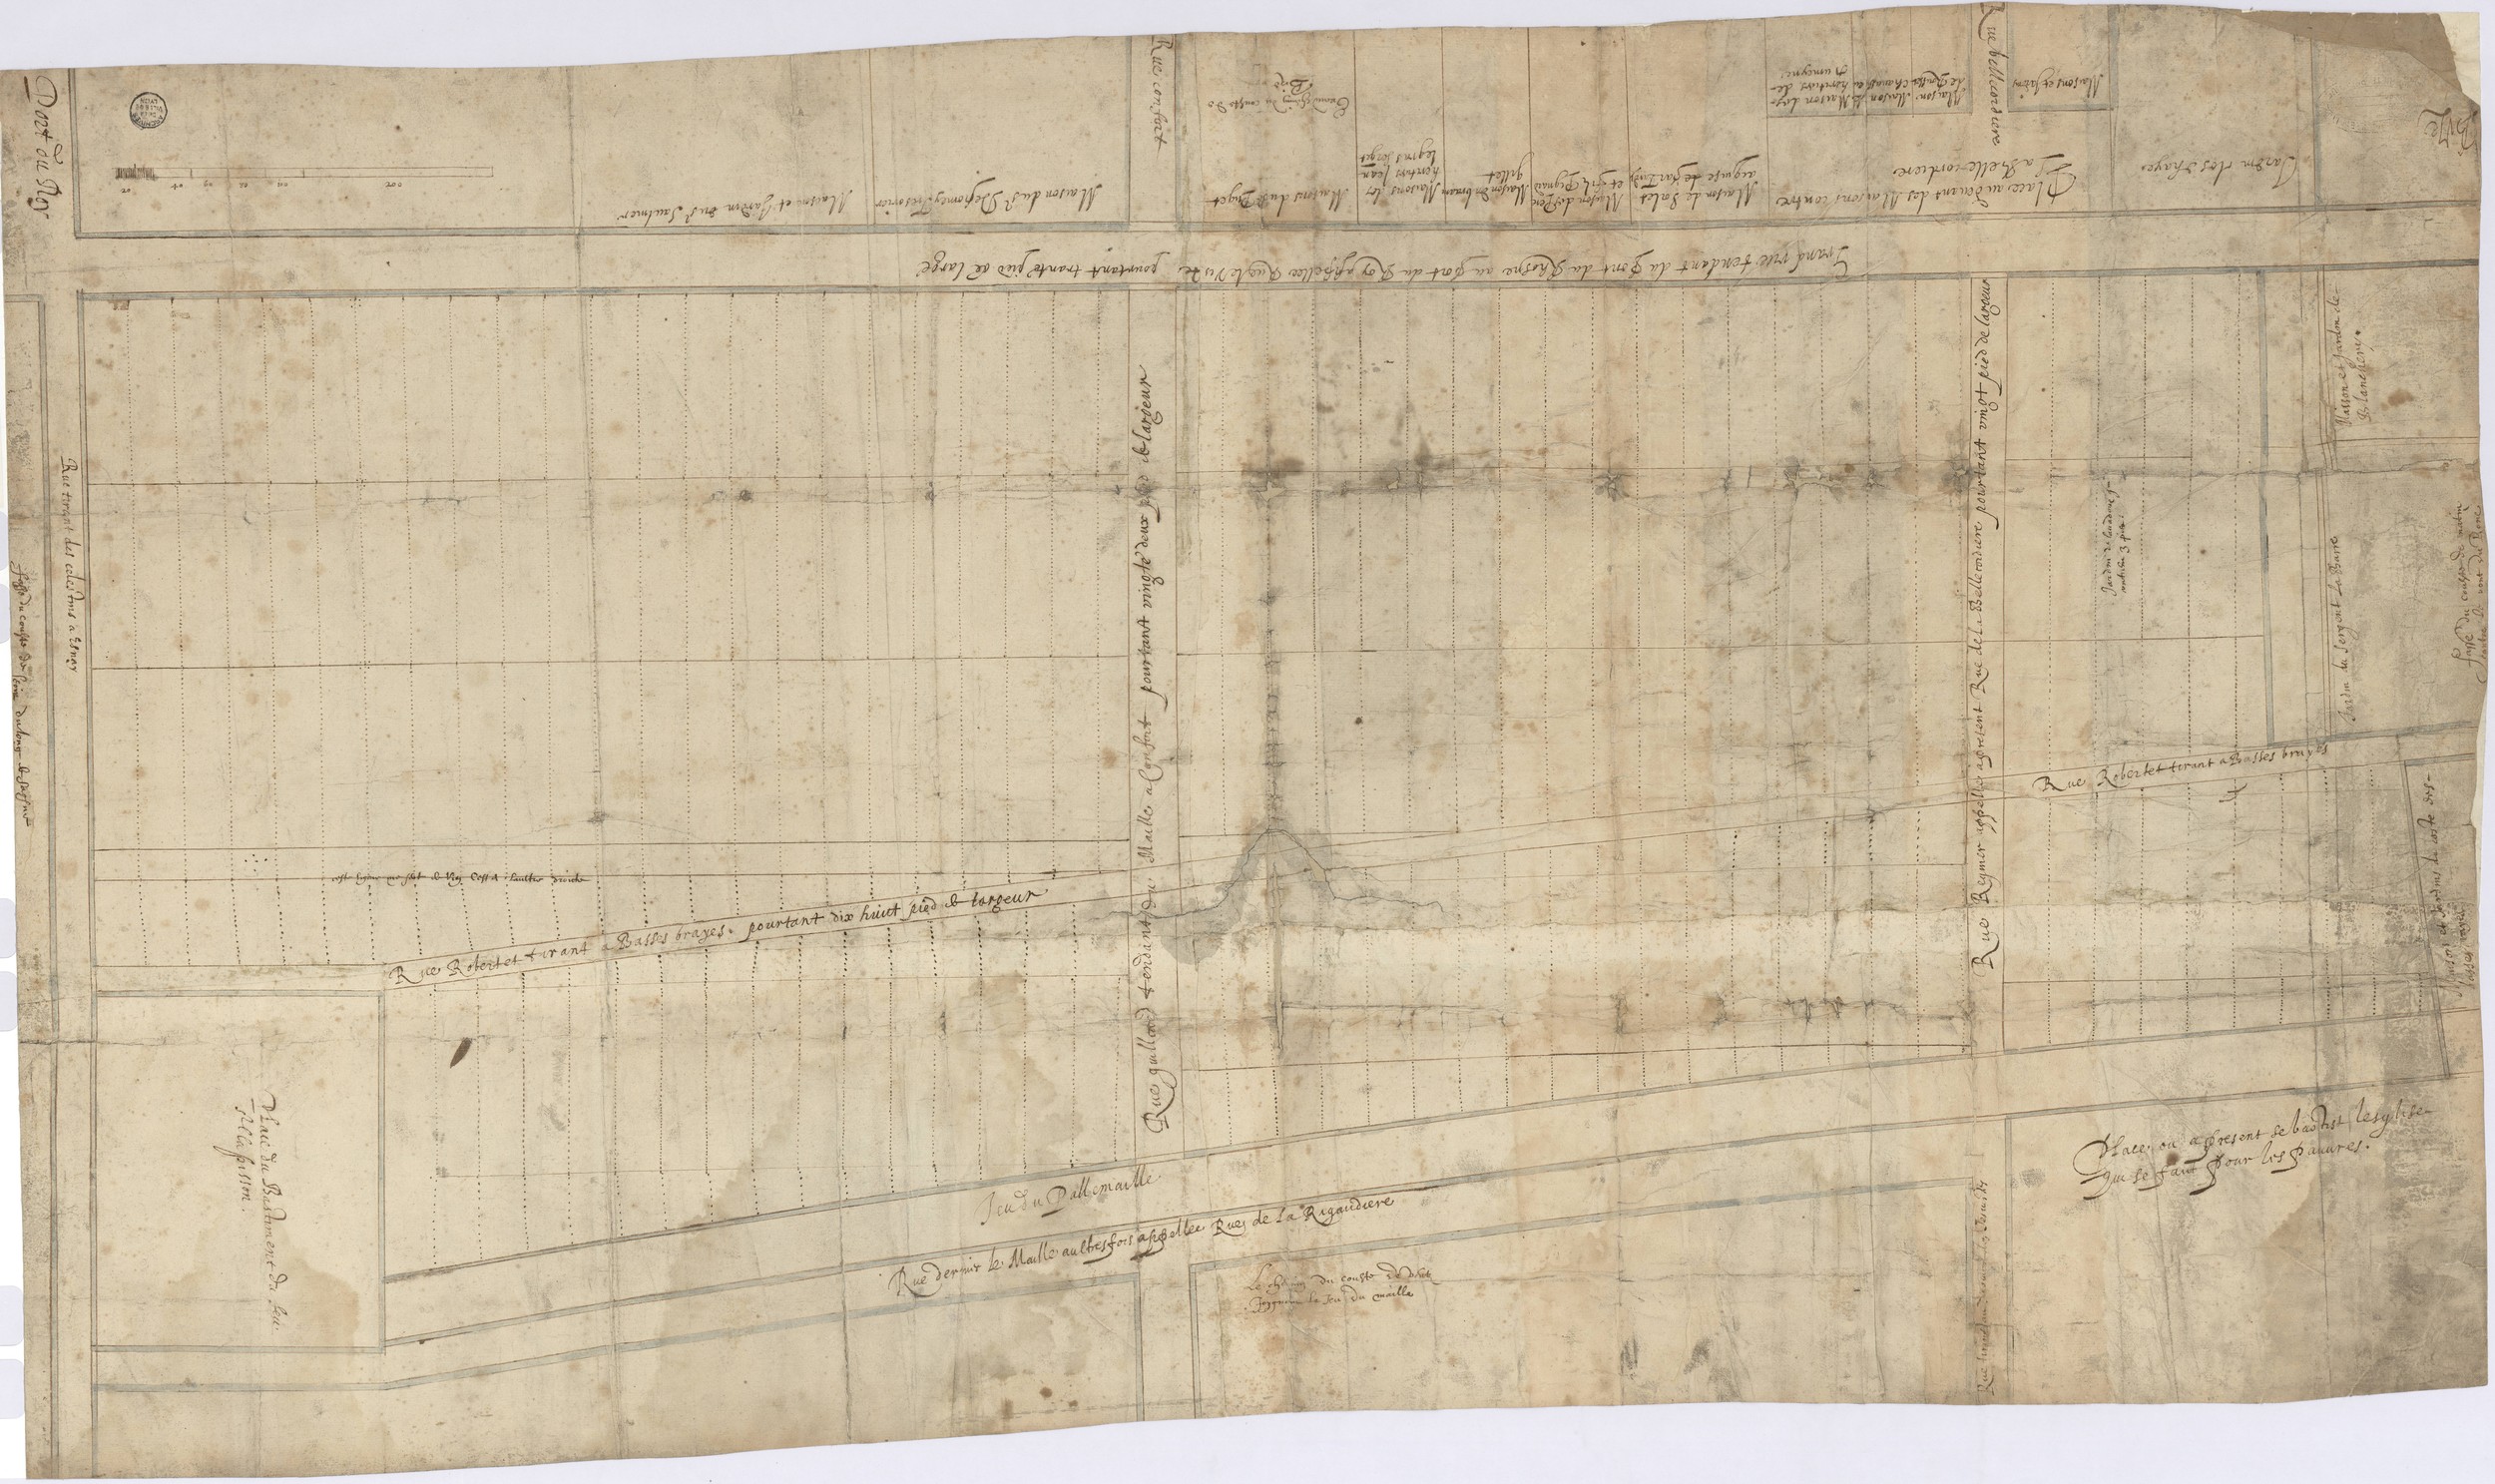 Plan du projet de lotissement du domaine de Bellecour : dessin à l'encre noire (vers 1620, cote : 2S/1)